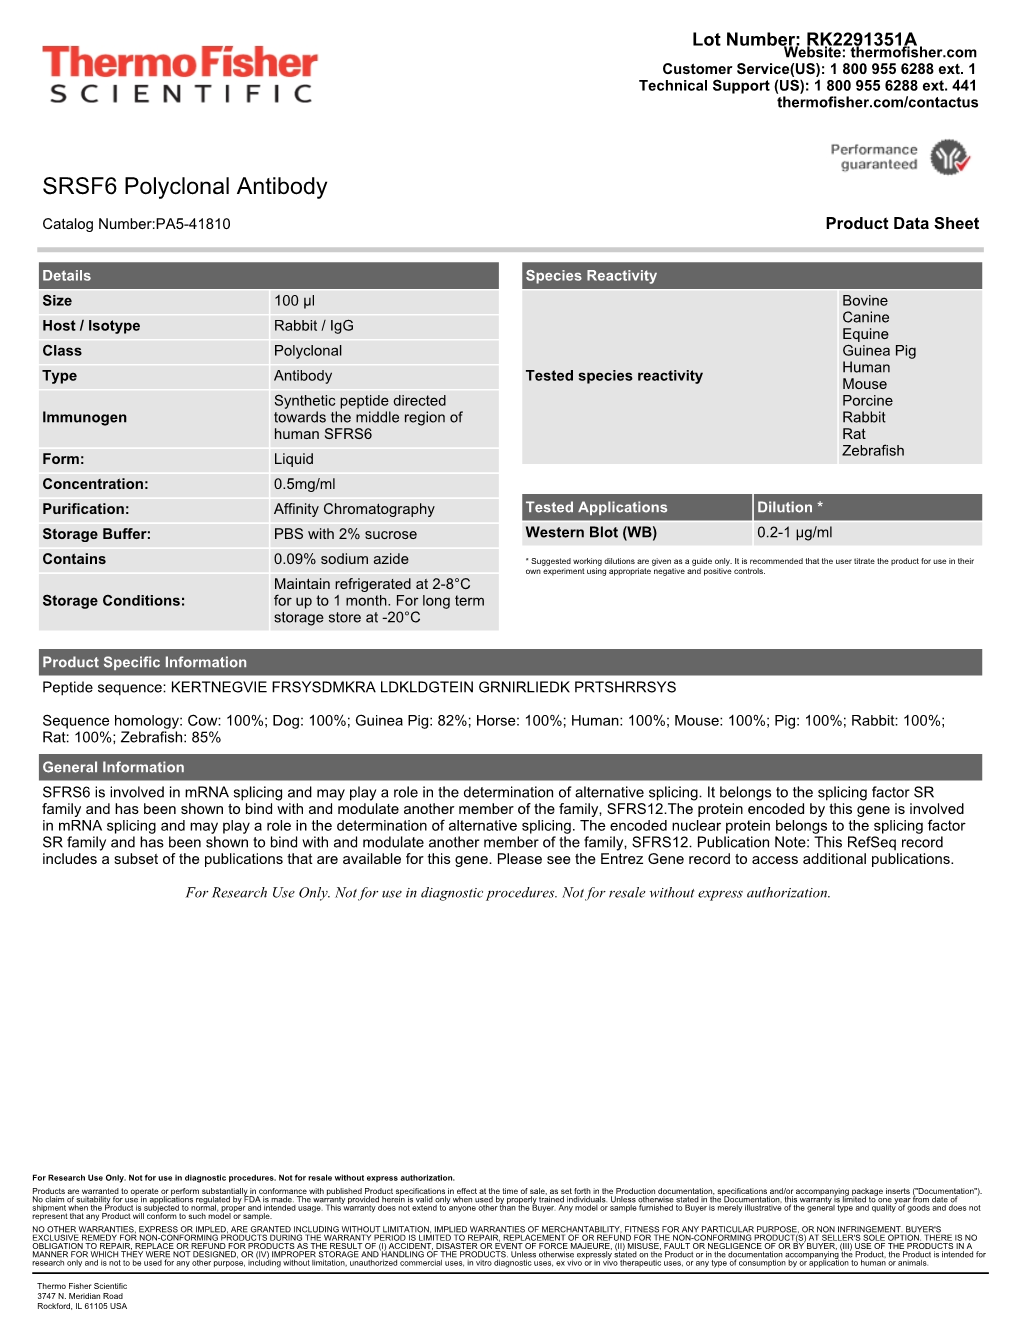 SRSF6 Polyclonal Antibody